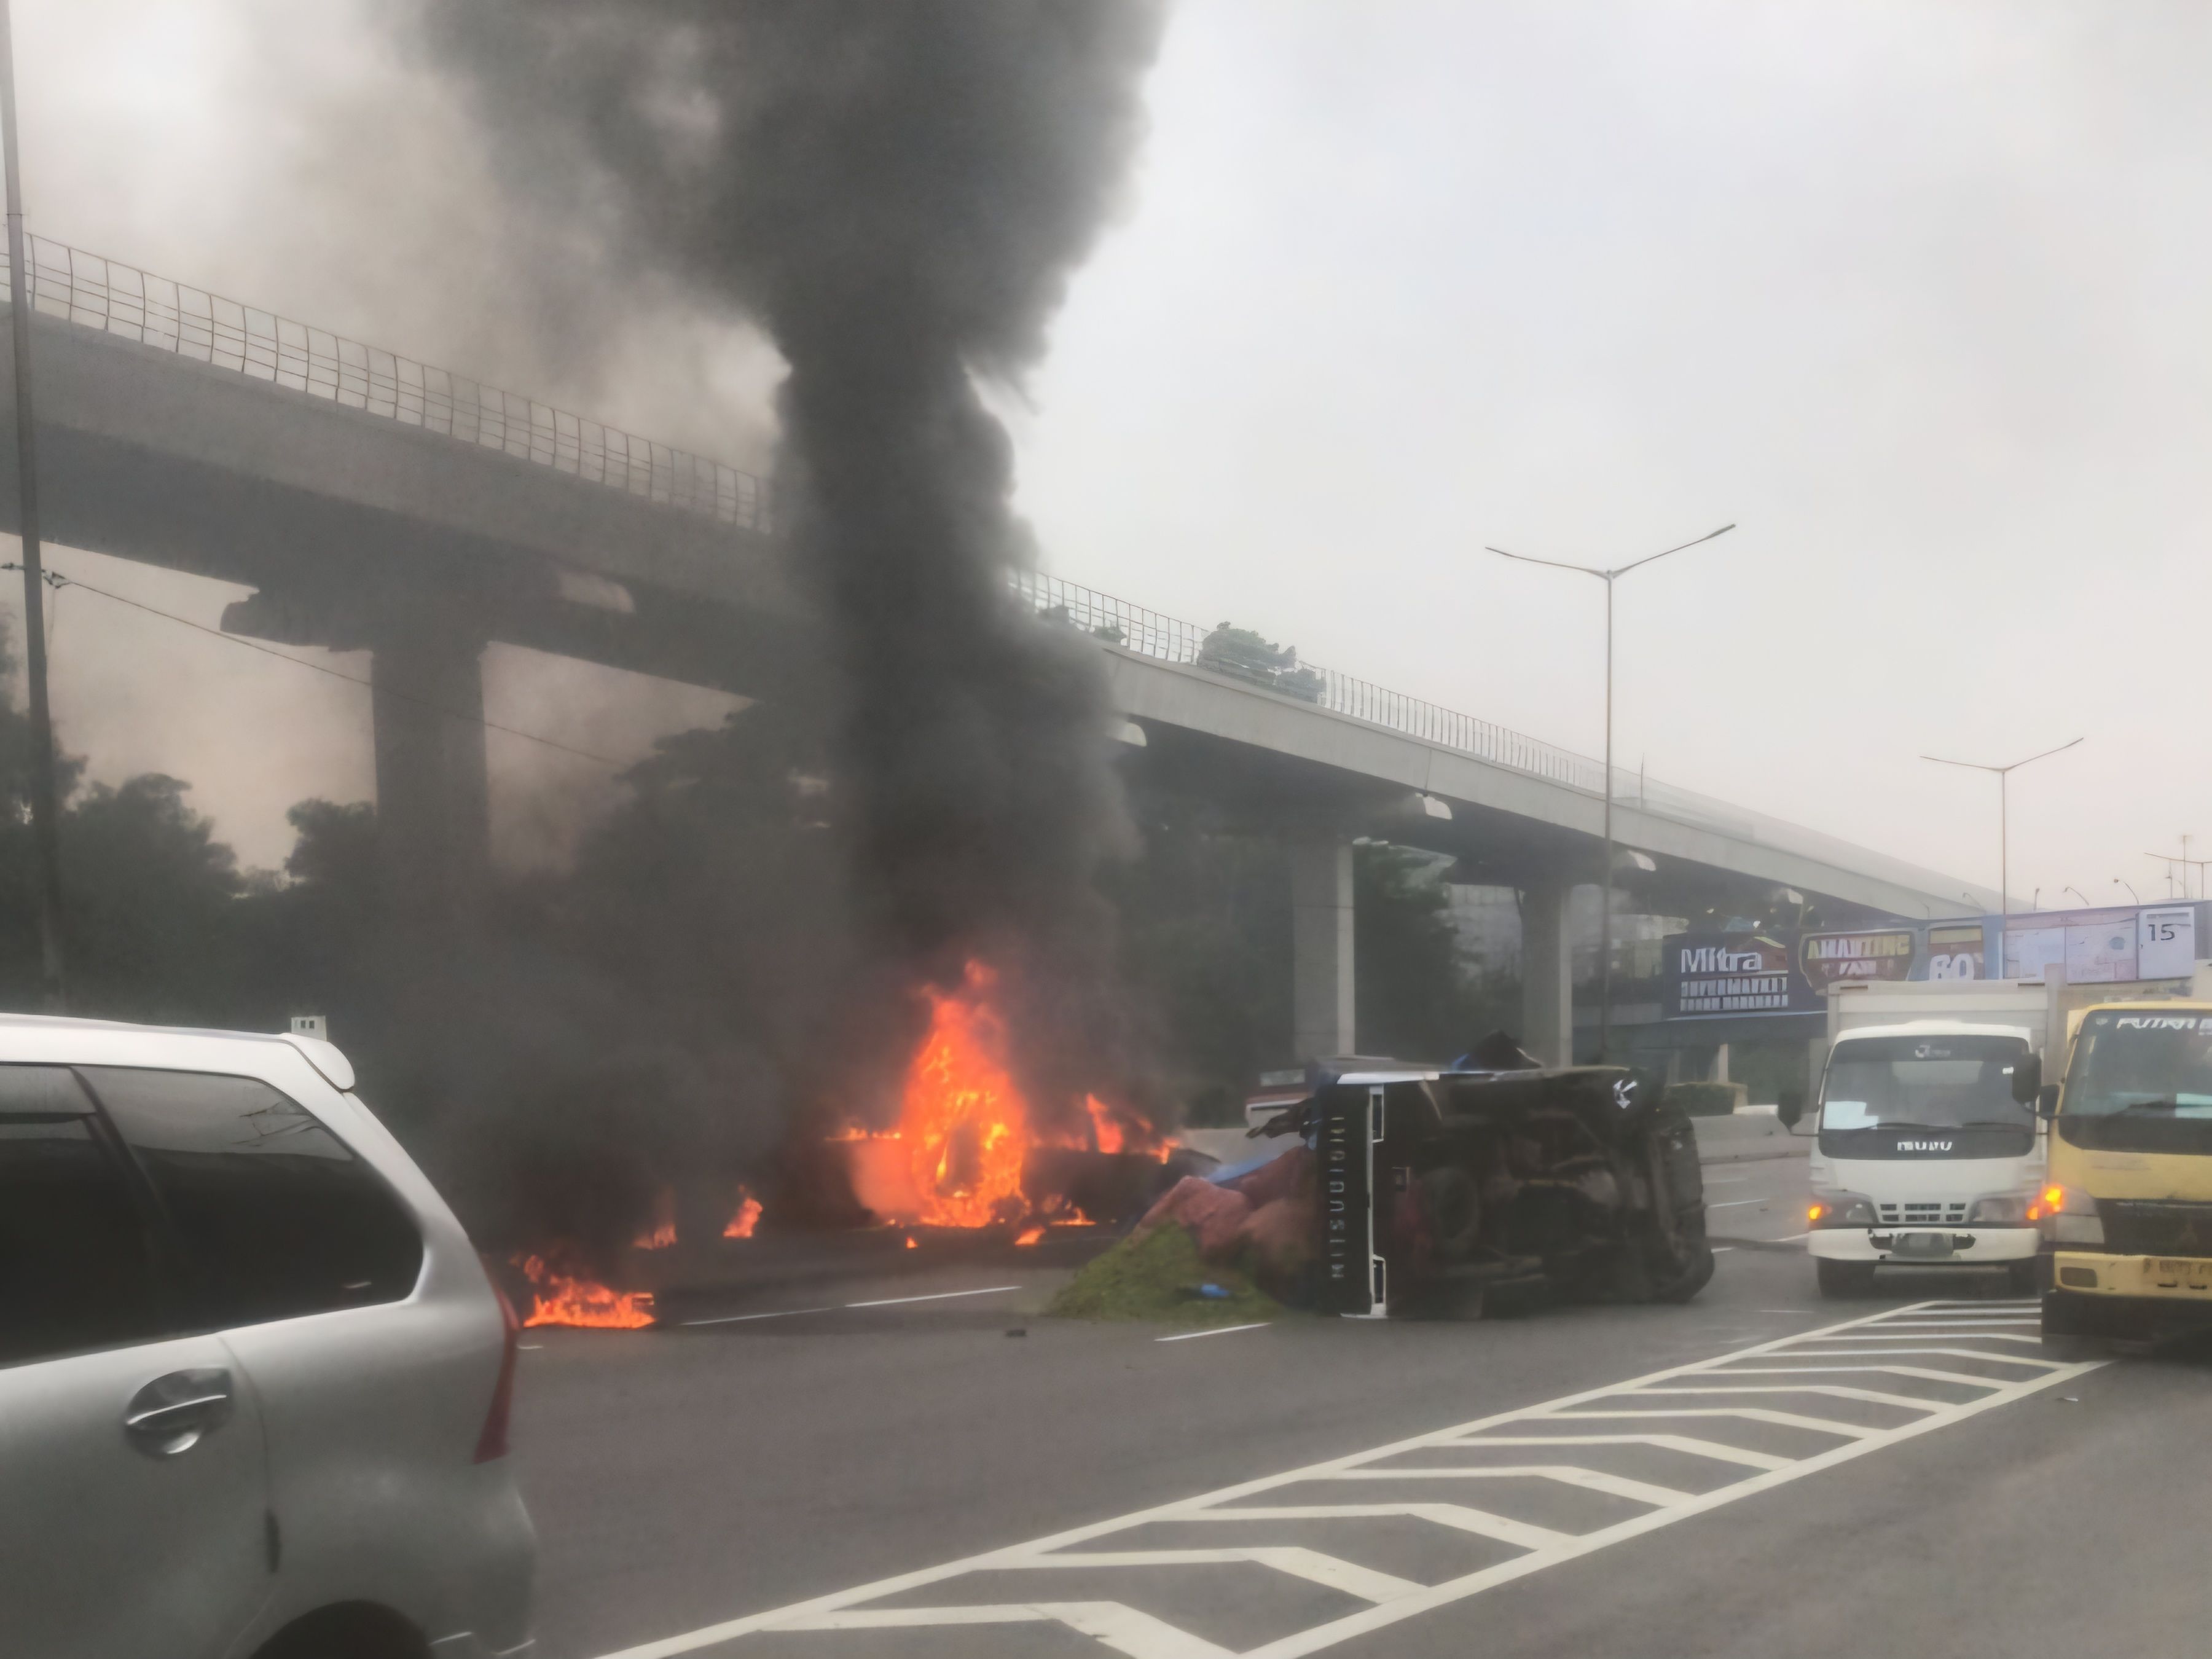 [POPULER JABODETABEK] Mobil Terbakar di Tol Japek Arah Cawang | Pembunuh Wanita Dalam Koper di Bekasi Ditangkap